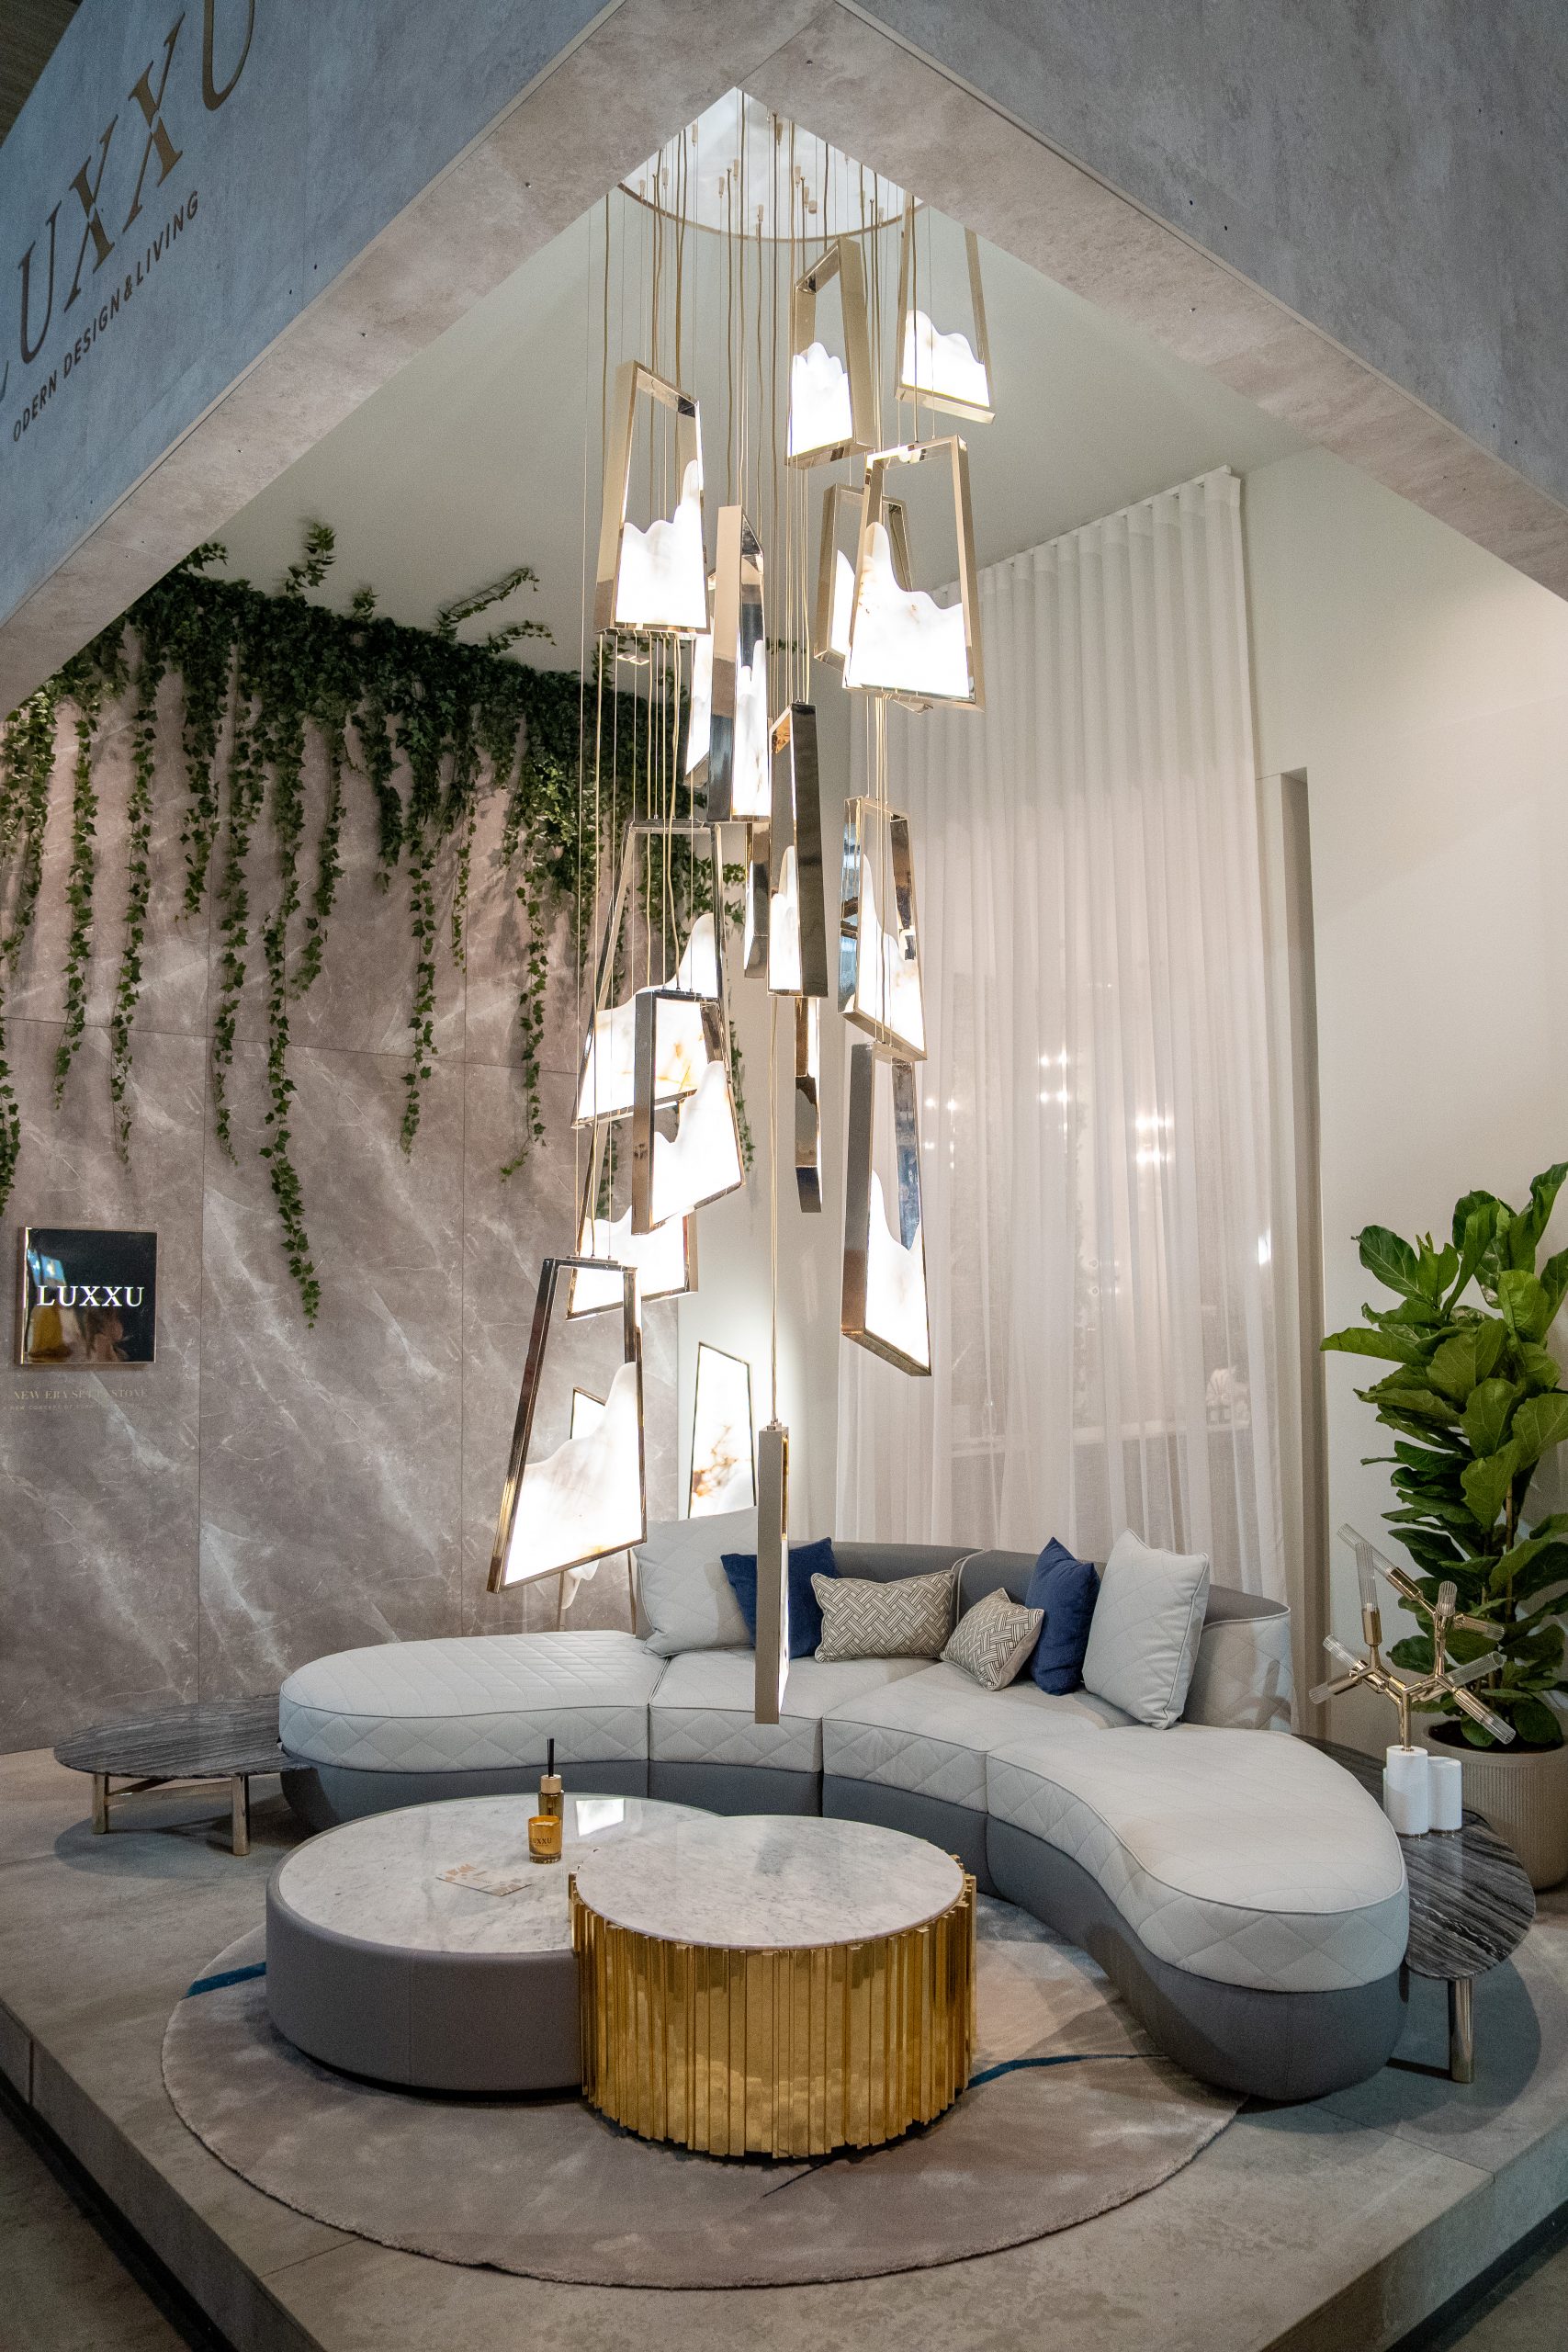 LUXXU Set It In Stone - Salone del Mobile 2022 Lounge Area